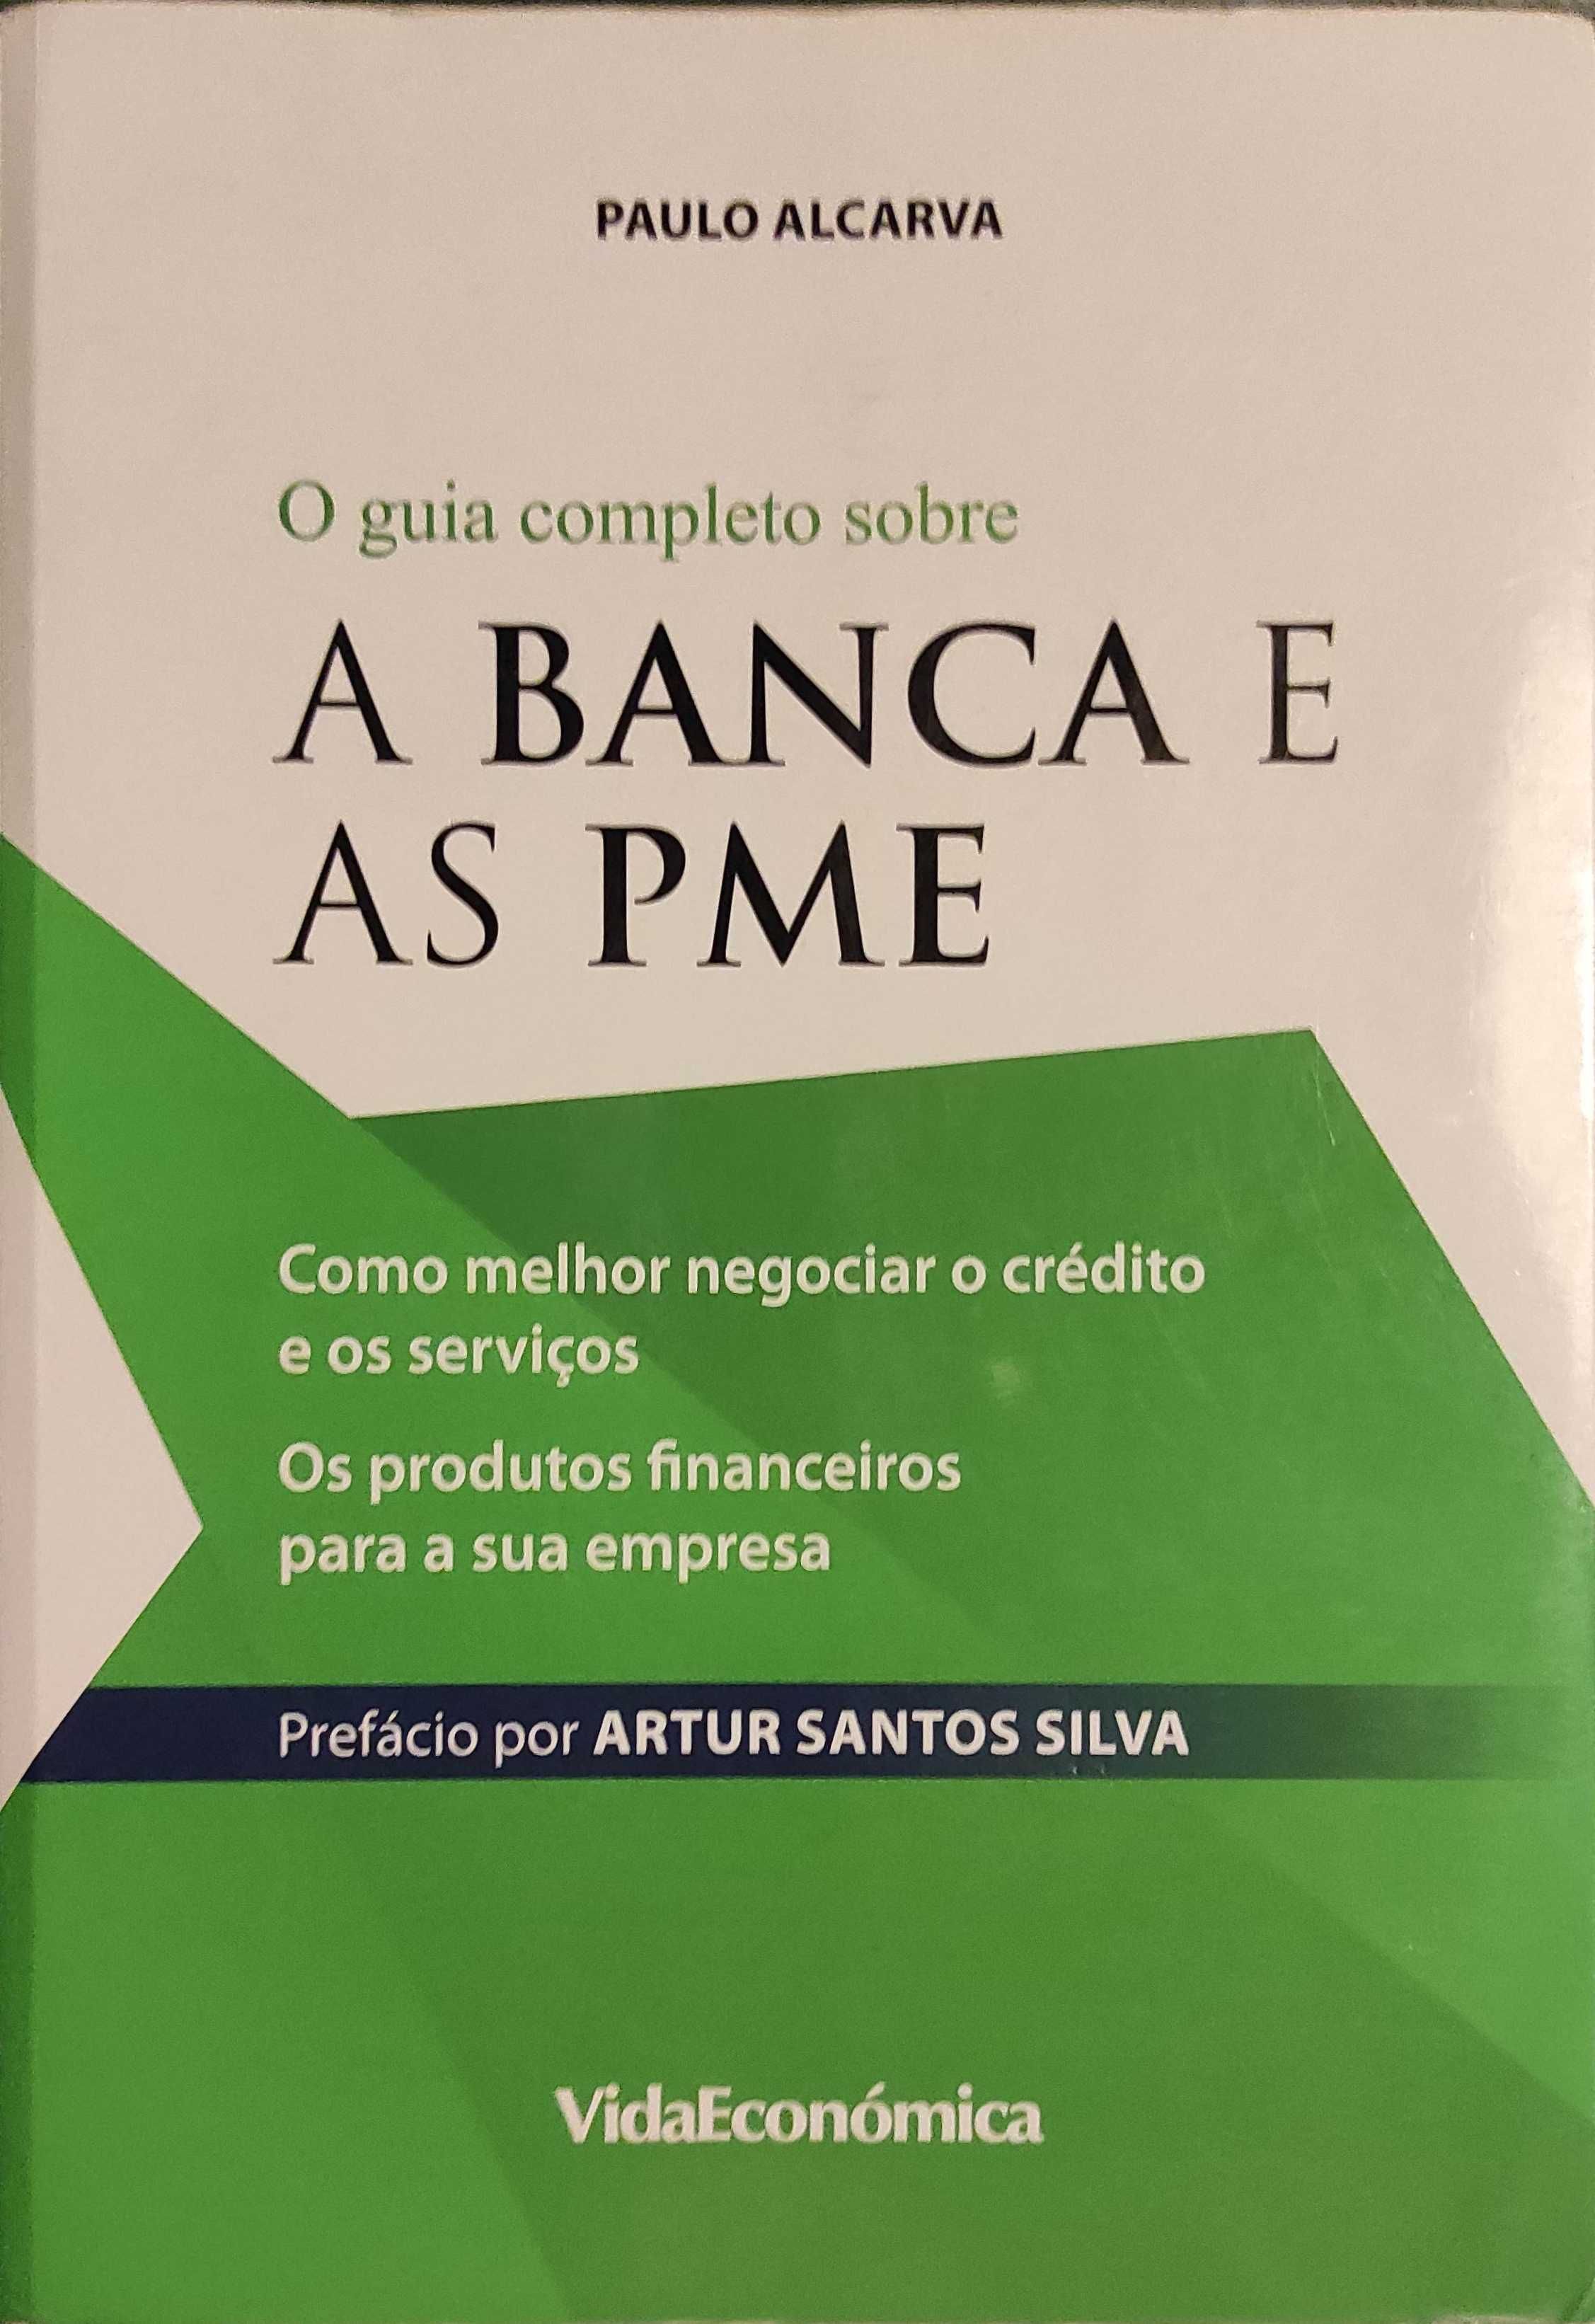 O Guia completo sobre A Banca e as PME